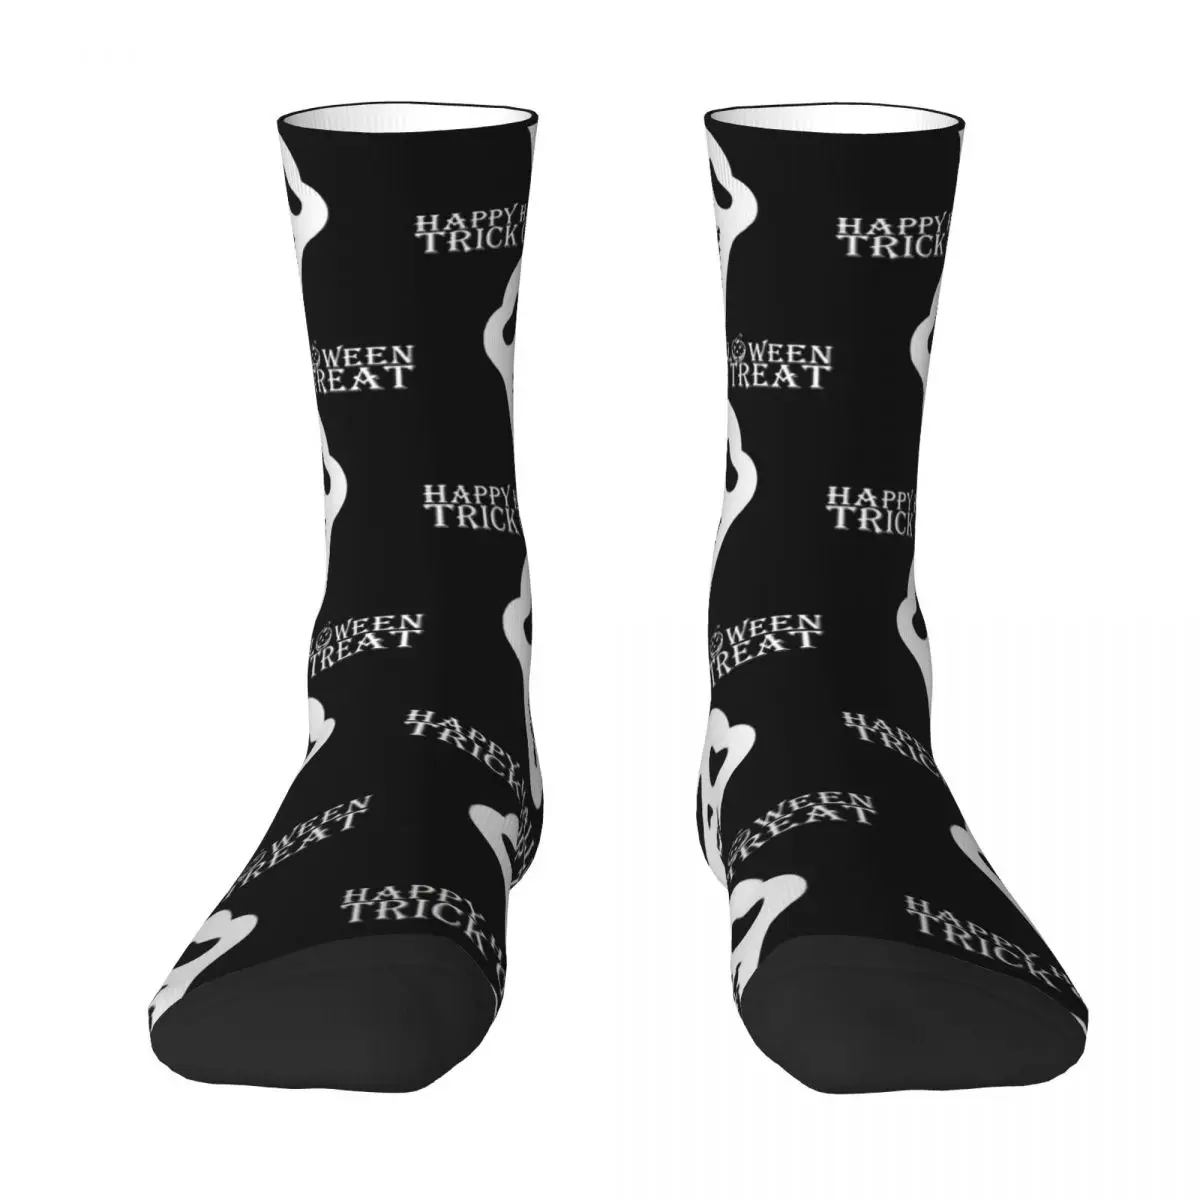 Trick Or Treat - Scary Spooky Ghost Mask Design For Halloween Adult Socks,Unisex socks,men Socks women Socks